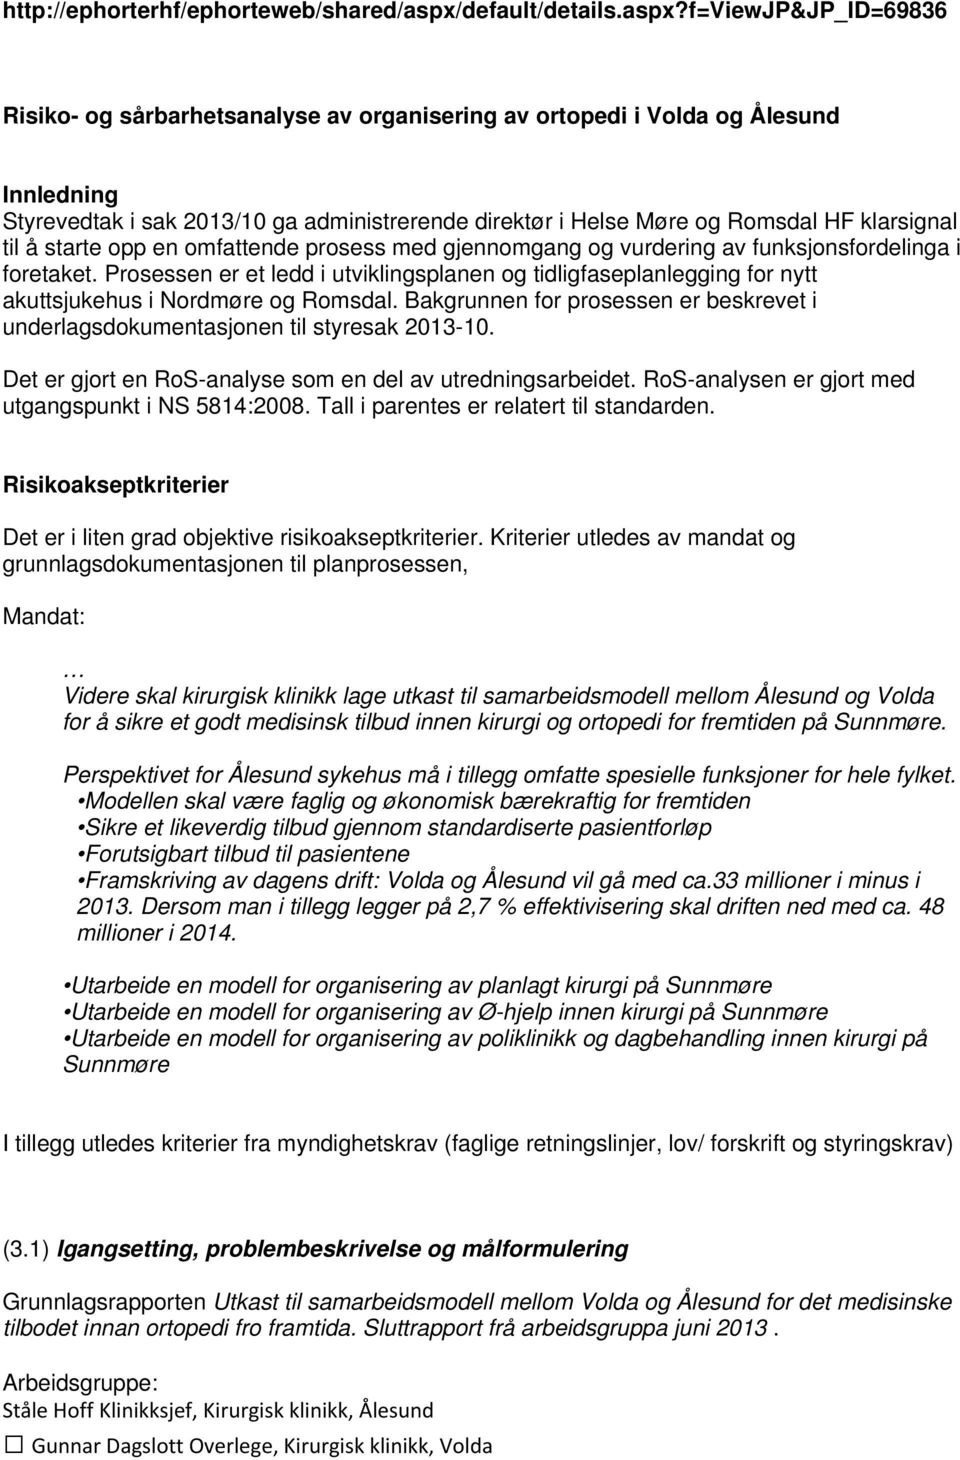 f=viewjp&jp_id=69836 Risiko- og sårbarhetsanalyse av organisering av ortopedi i Volda og Ålesund Innledning Styrevedtak i sak 2013/10 ga administrerende direktør i Helse Møre og Romsdal HF klarsignal